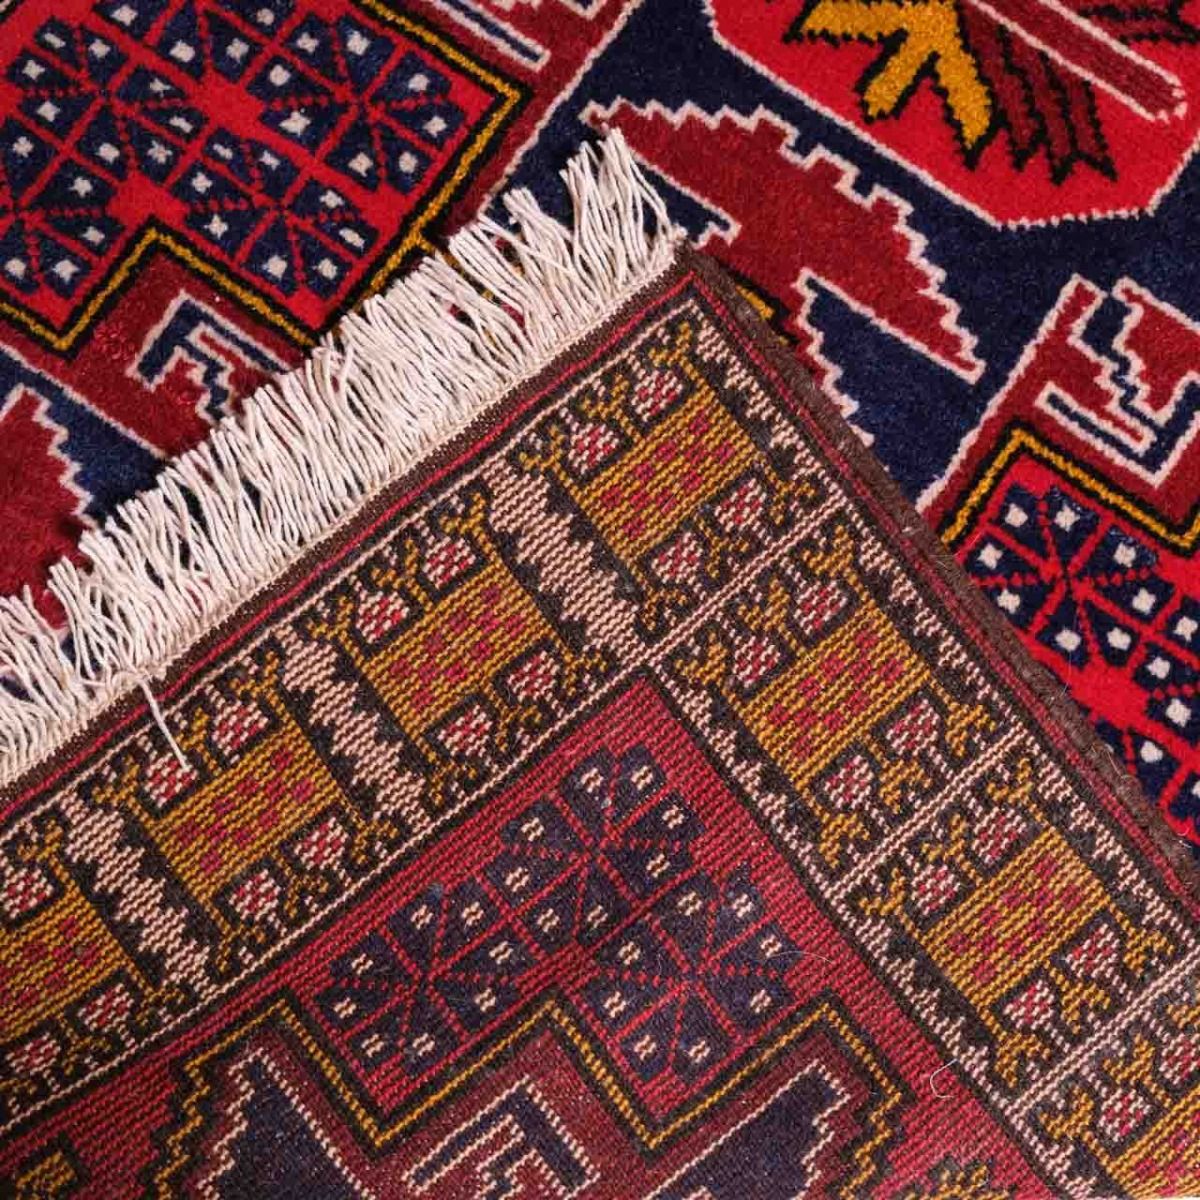 Hand Woven Carpet,Retro Rug,Vintage Carpet,Red Color Vintage Rug,Wool Carpet